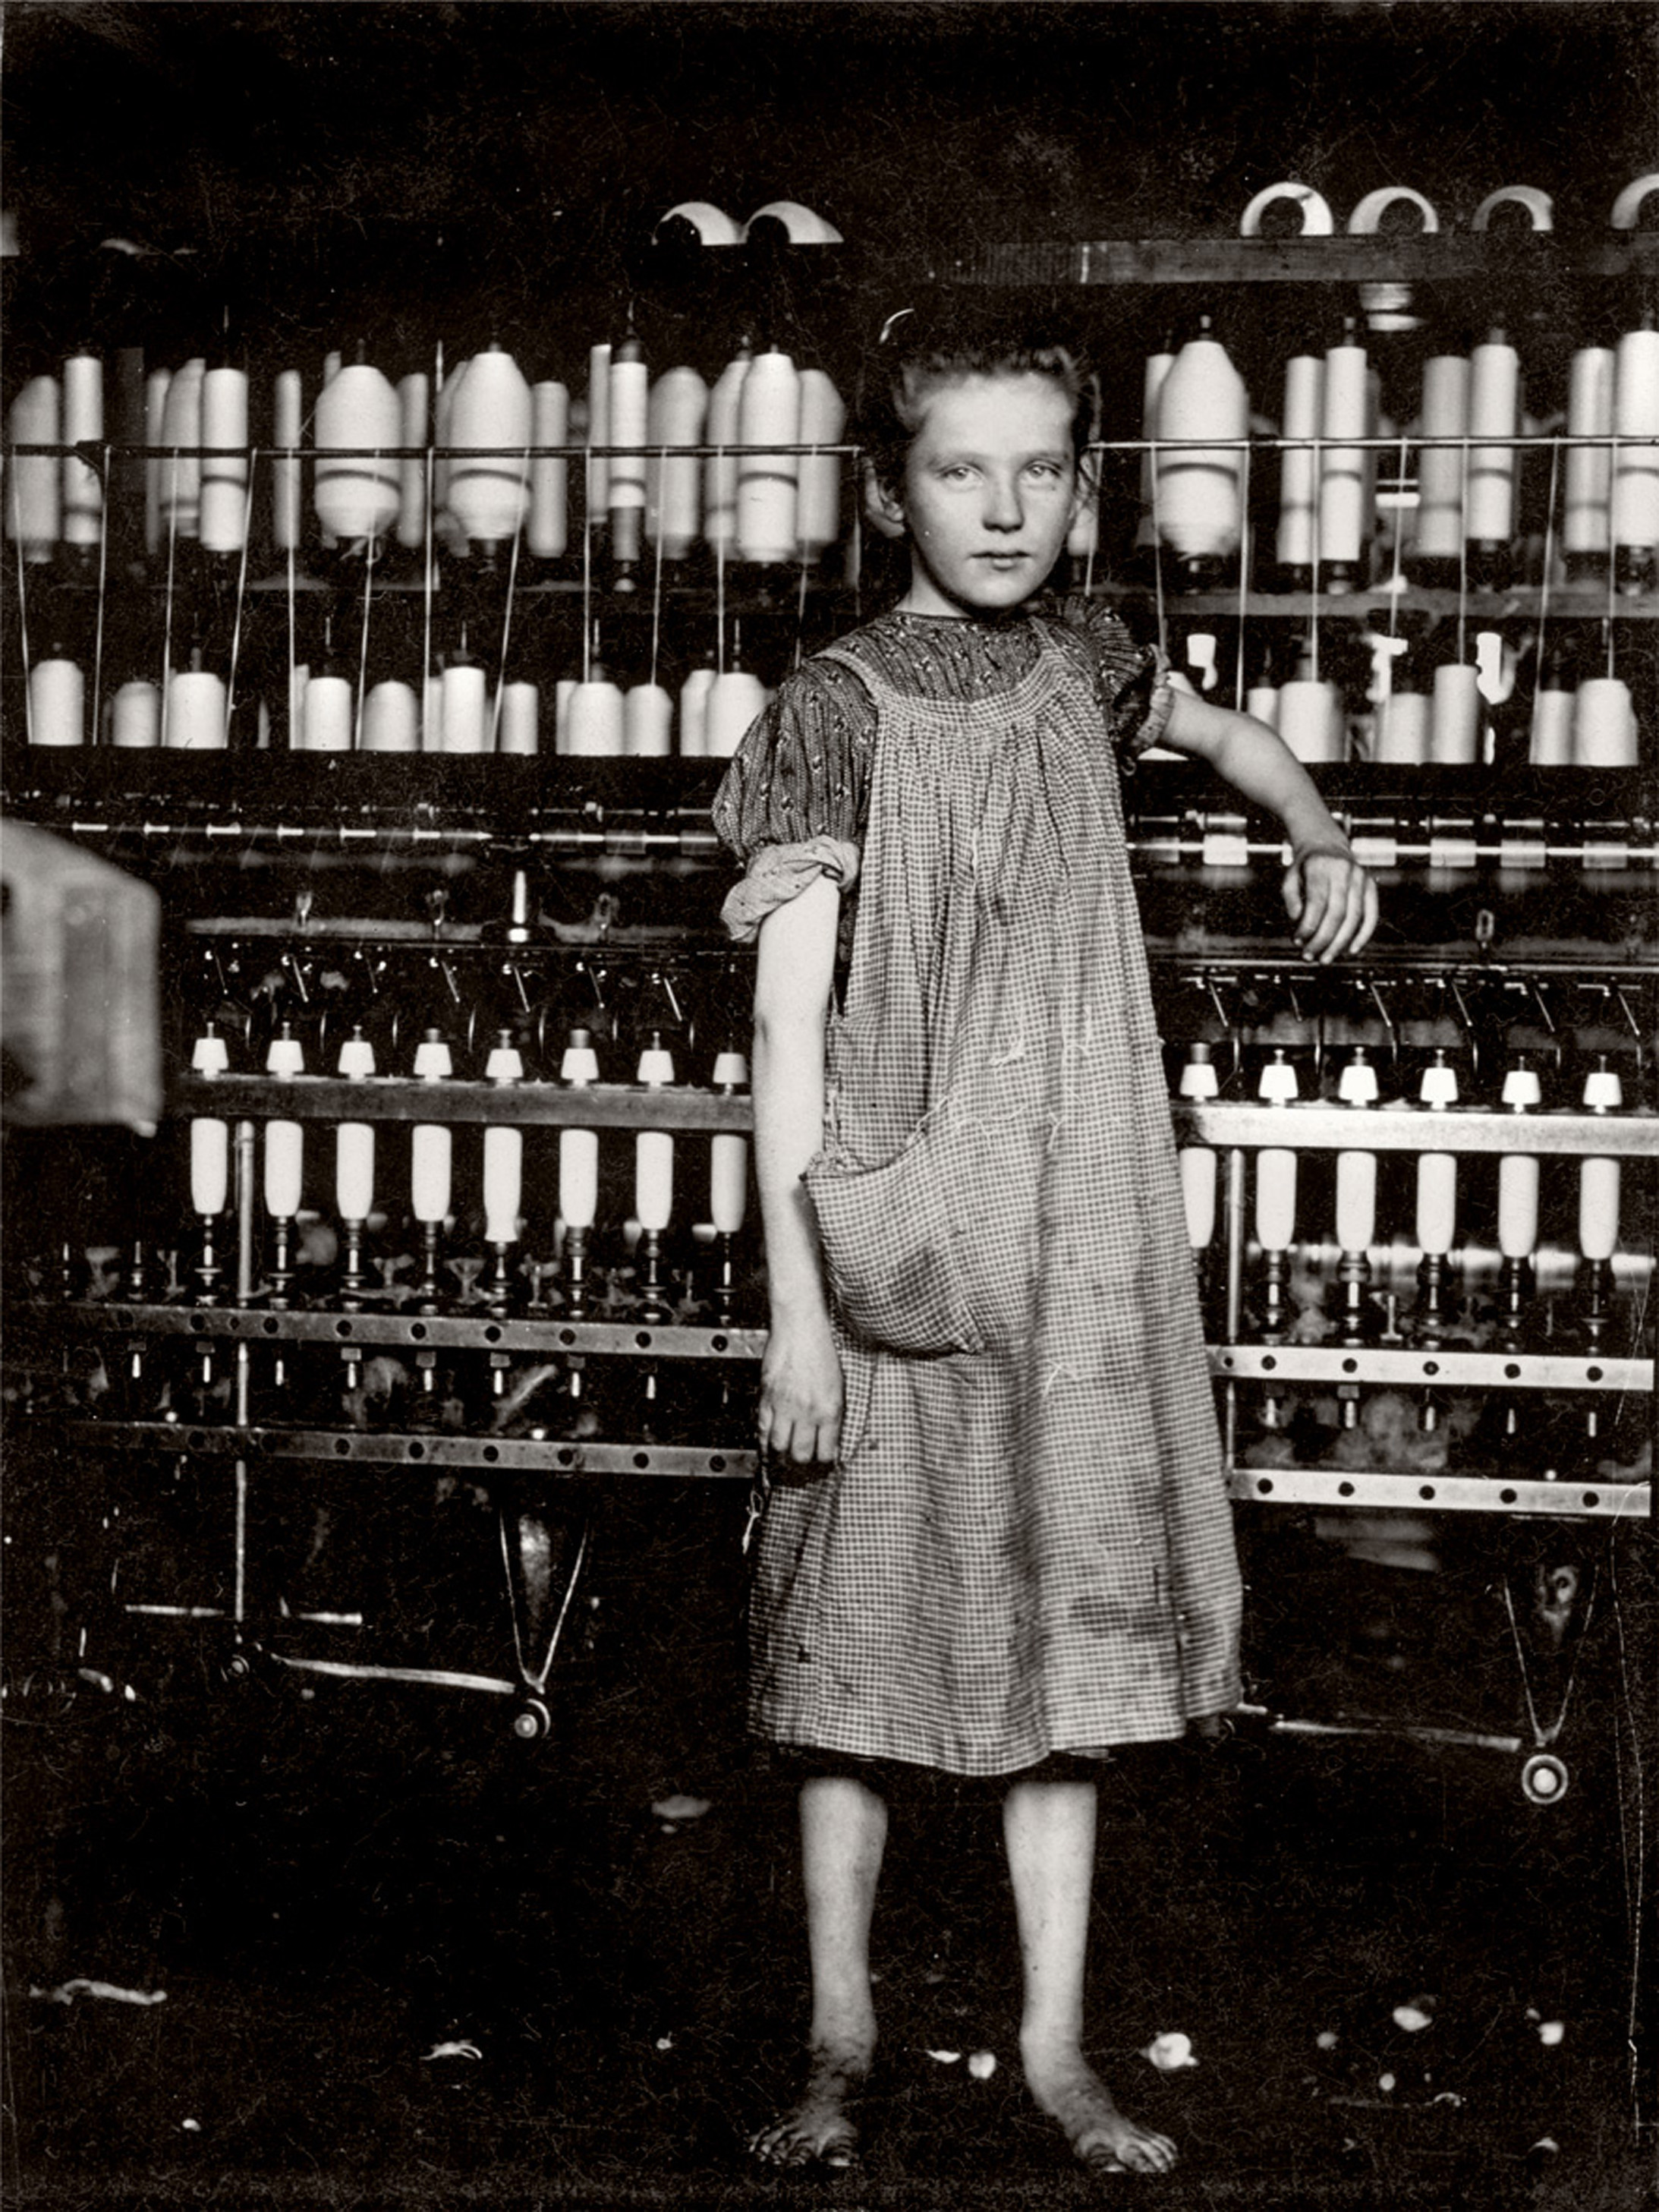 Lewis Hine,
Spinner in New England mill (Spinner in einer Fabrik in New England), 1913
Silbergelatine-Abzug, 12.6 x 10.1 cm
©Sammlung des George Eastman House, Rochester